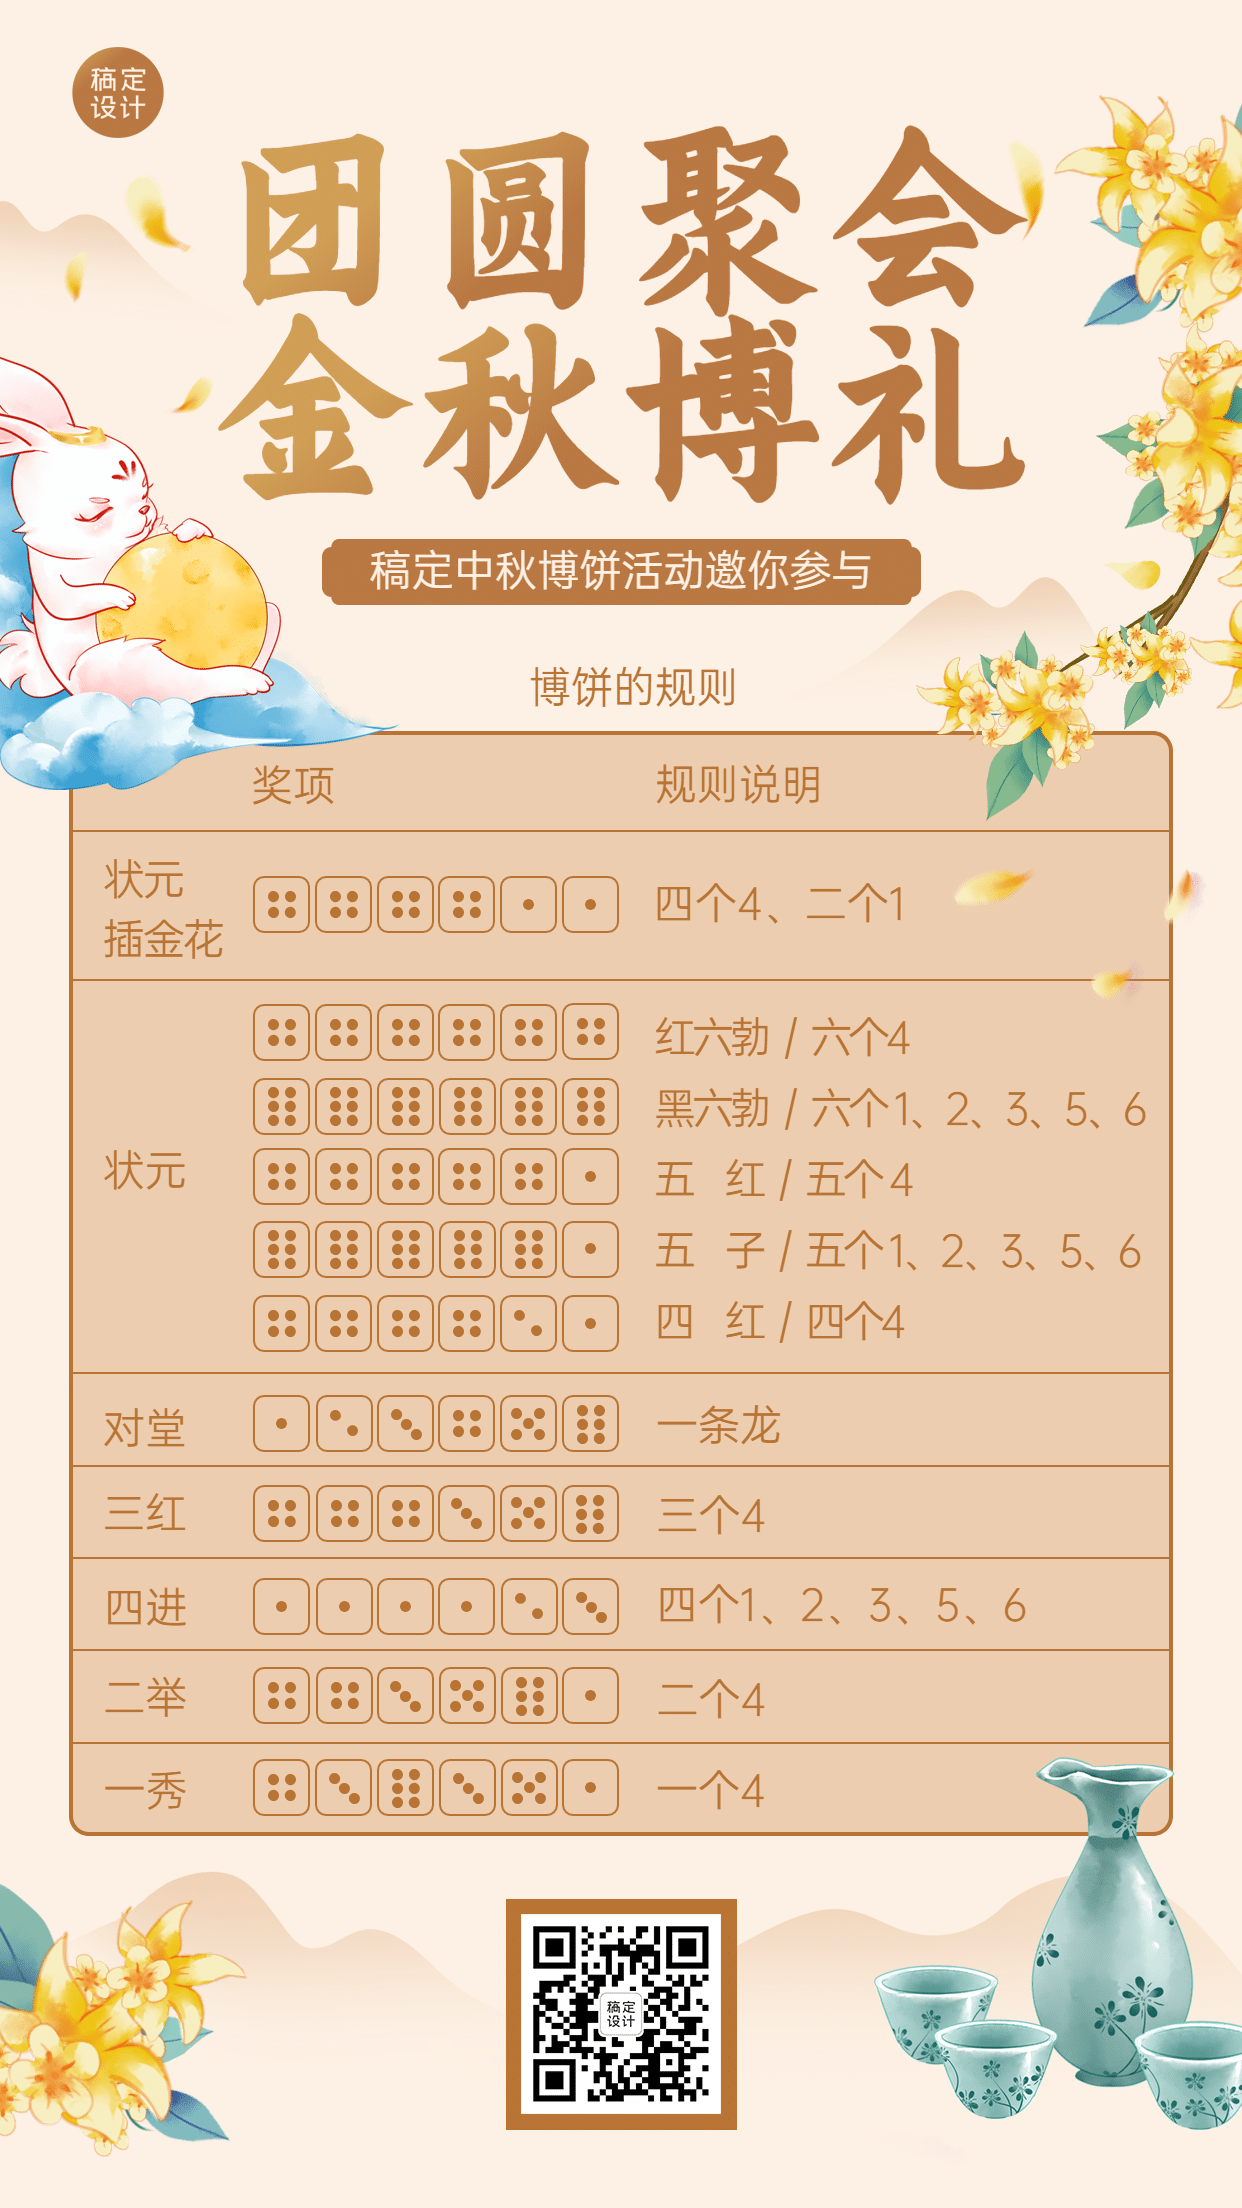 中秋节博饼活动营销手绘手机海报